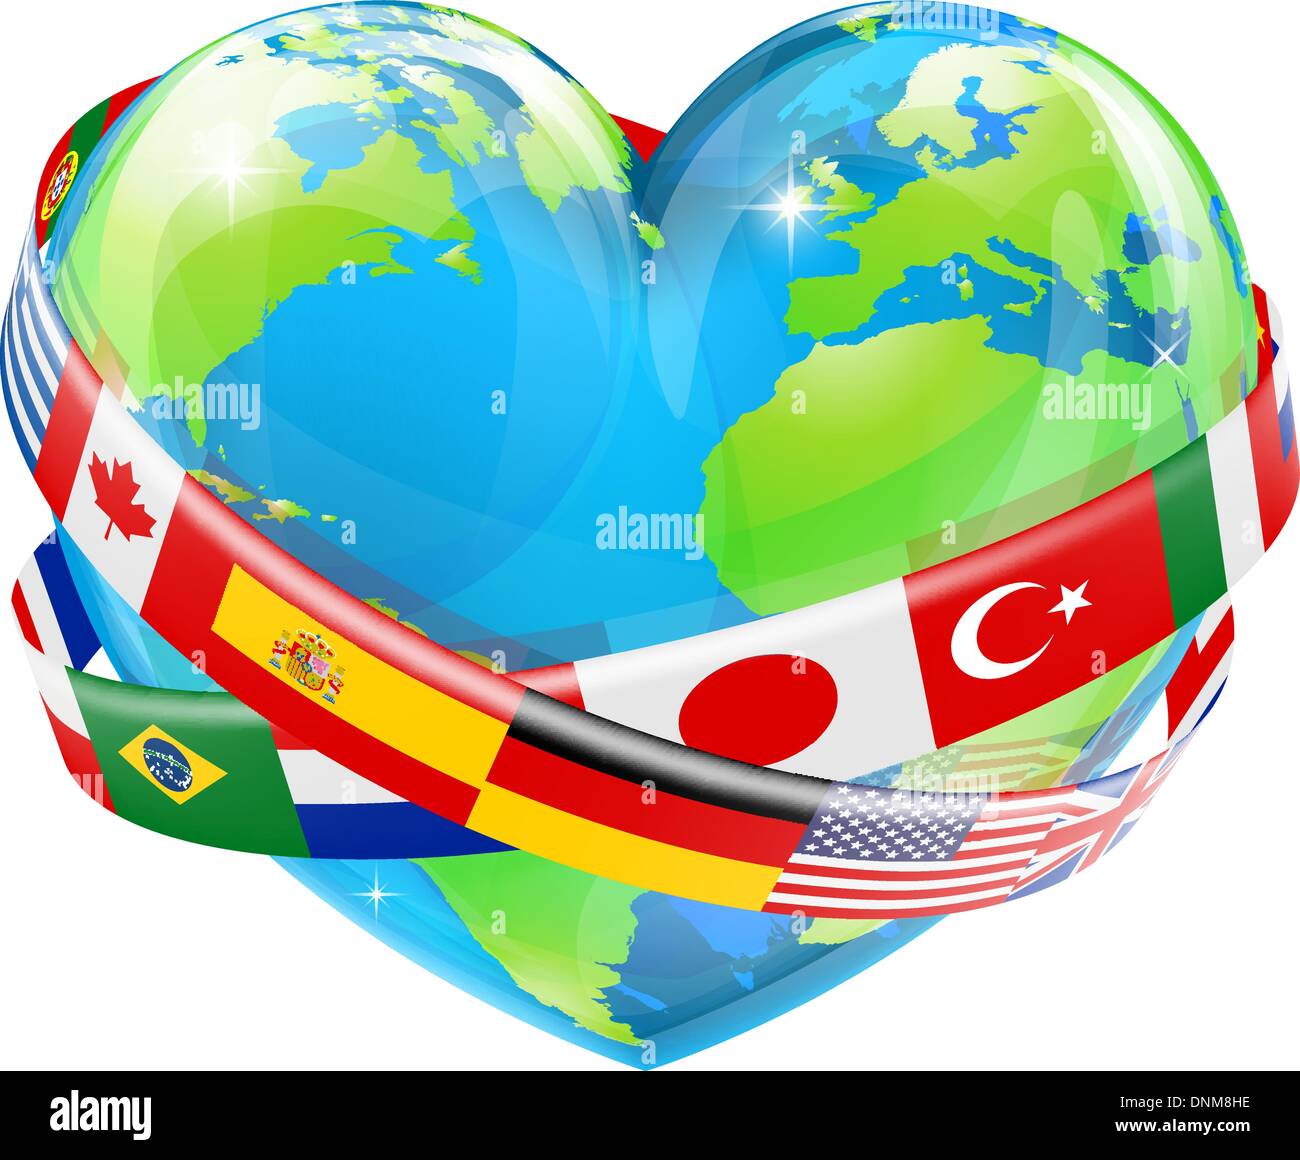 Ein Beispiel für ein Herz geformt Erde Weltkugel mit den Flaggen vieler verschiedener Länder fliegen herum. Stock Vektor